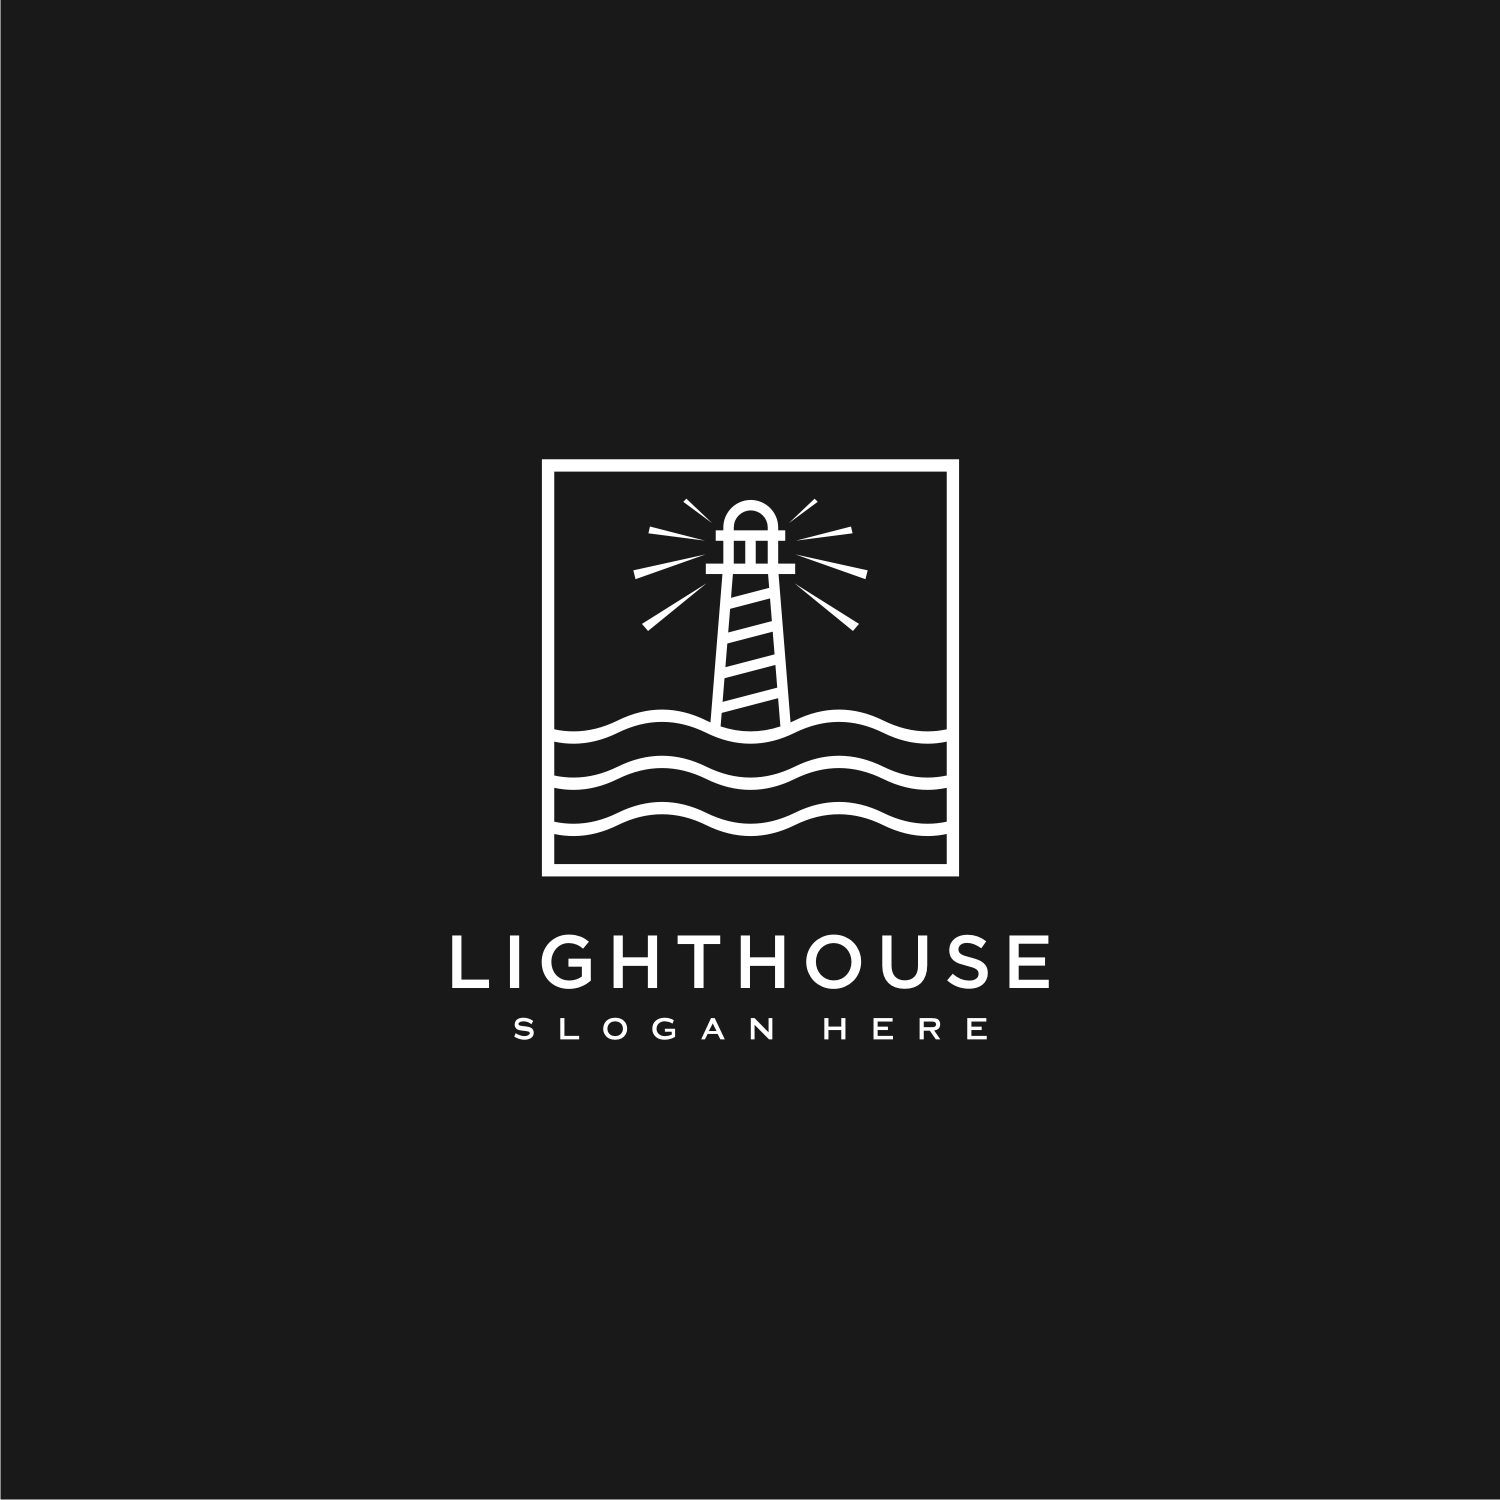 3 Lighthouse Logo Vector Designs